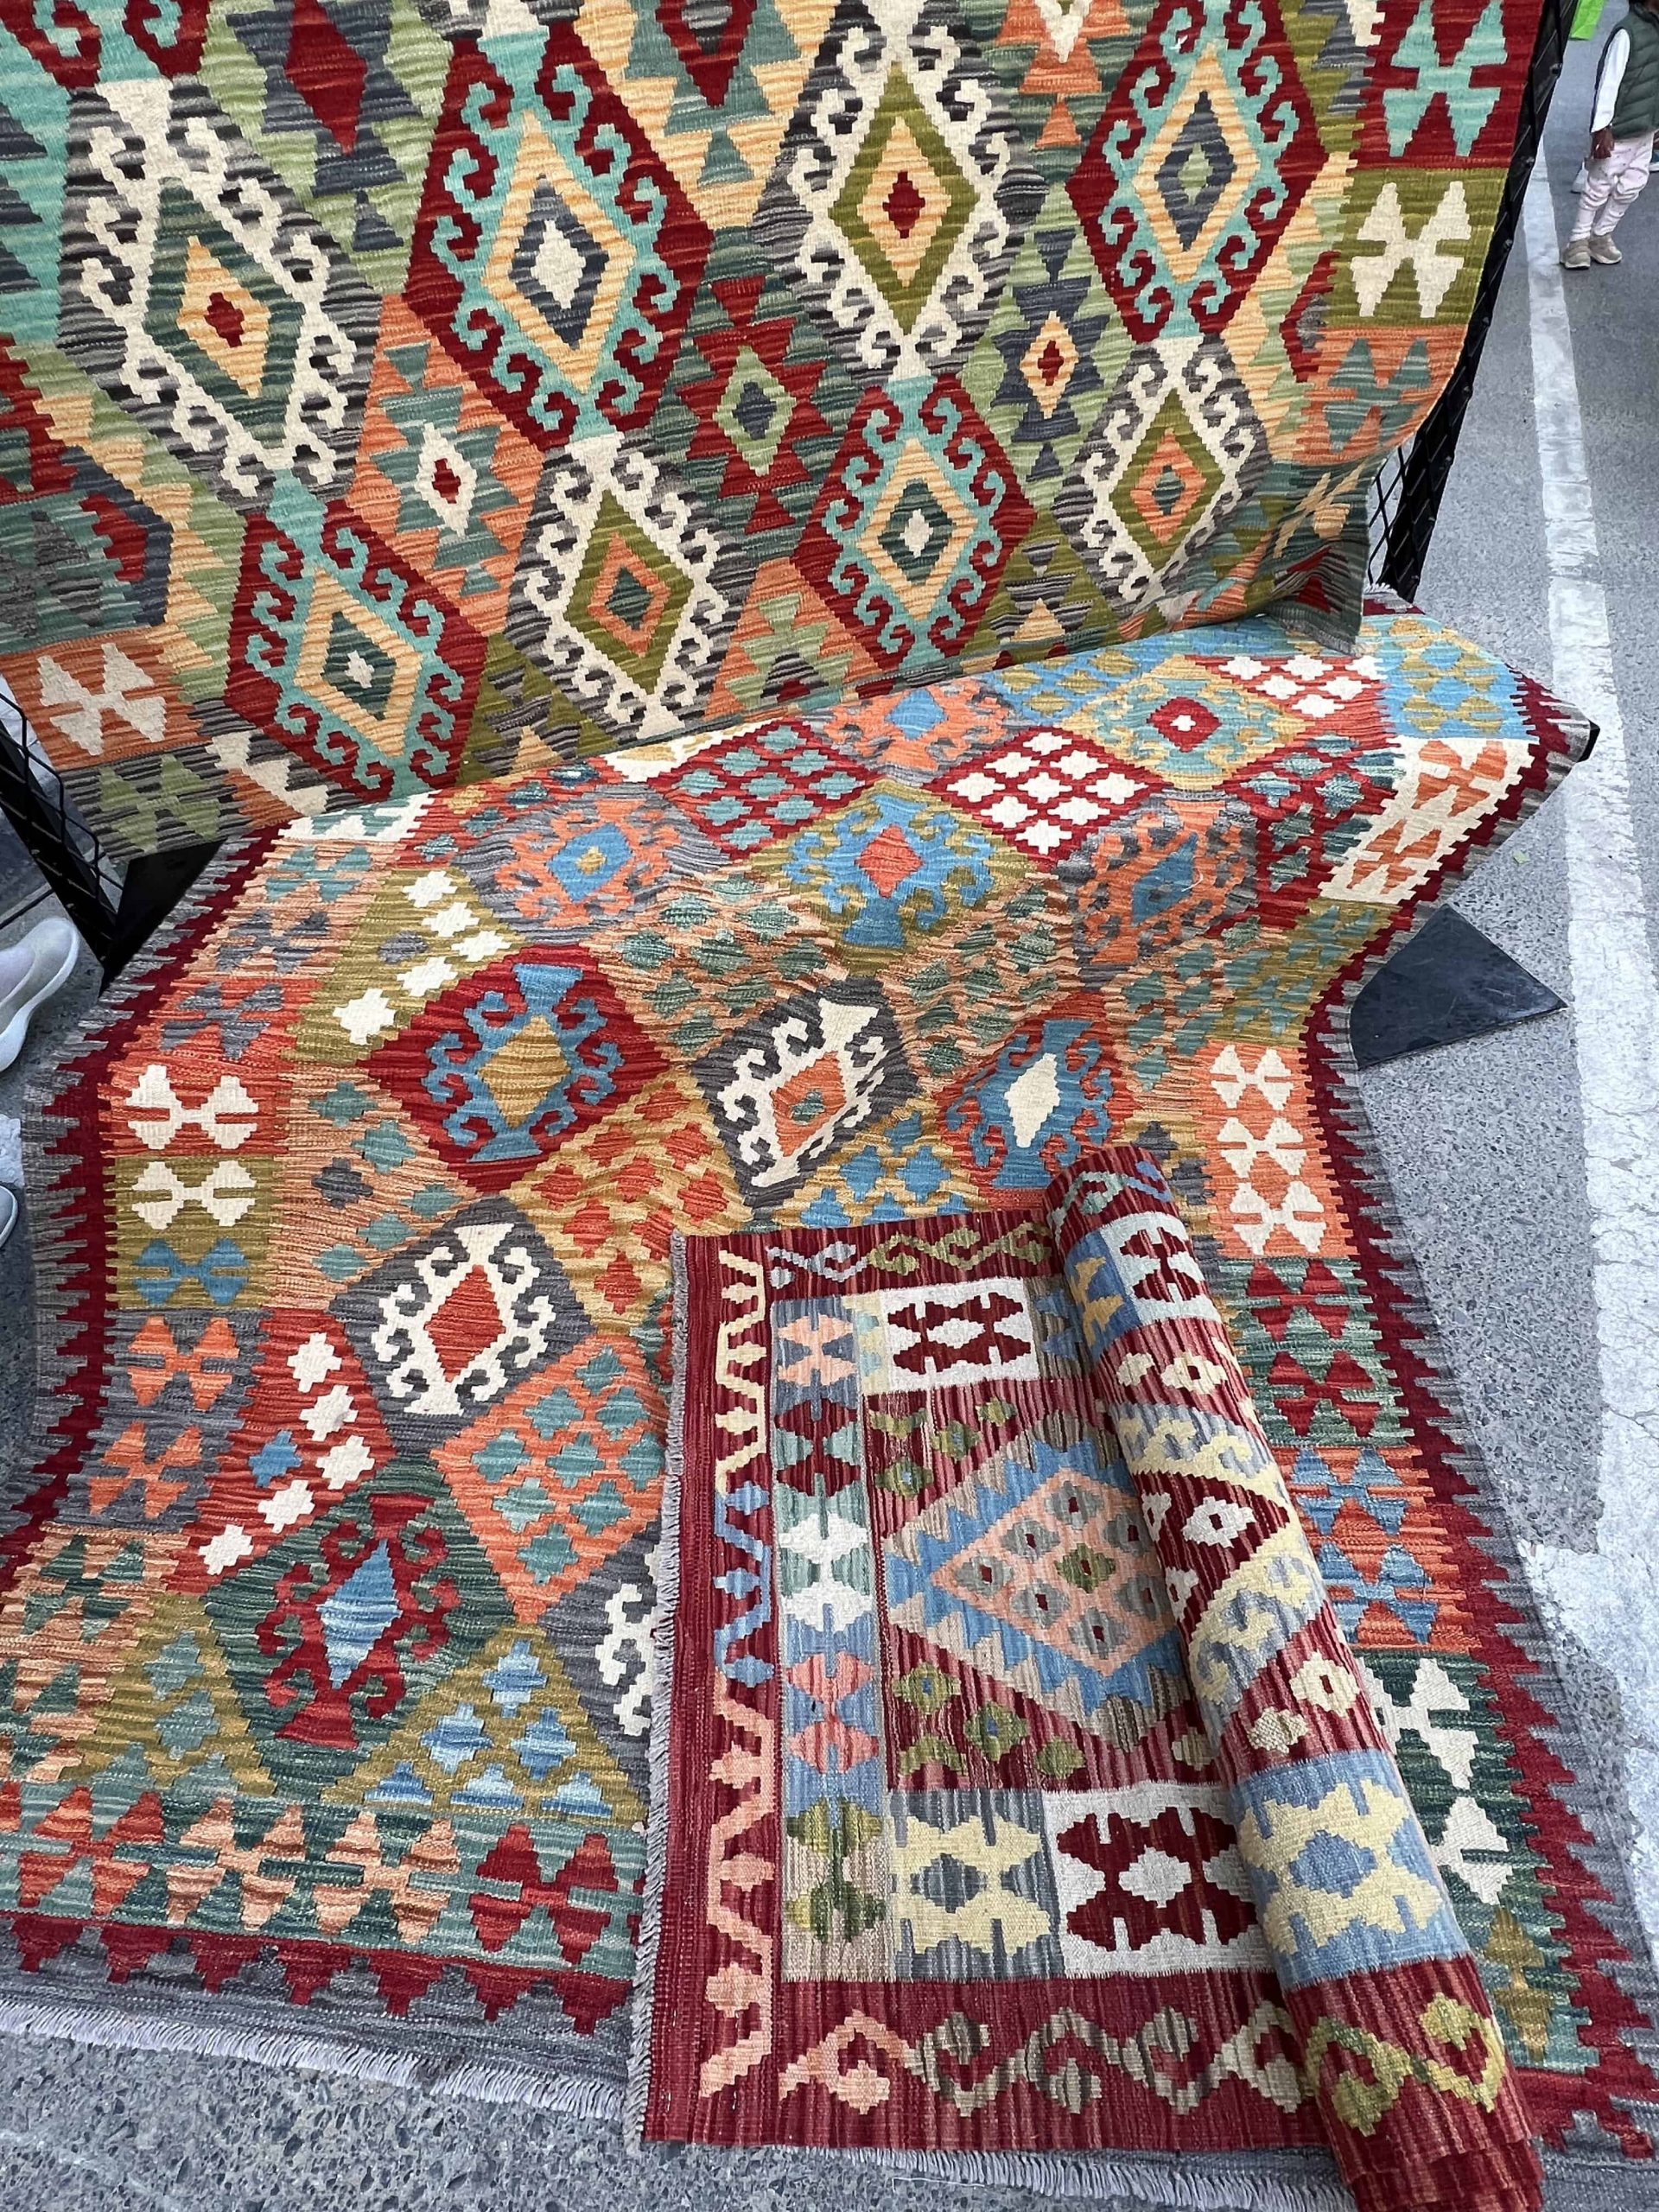 Persian rugs on a street in Dubai